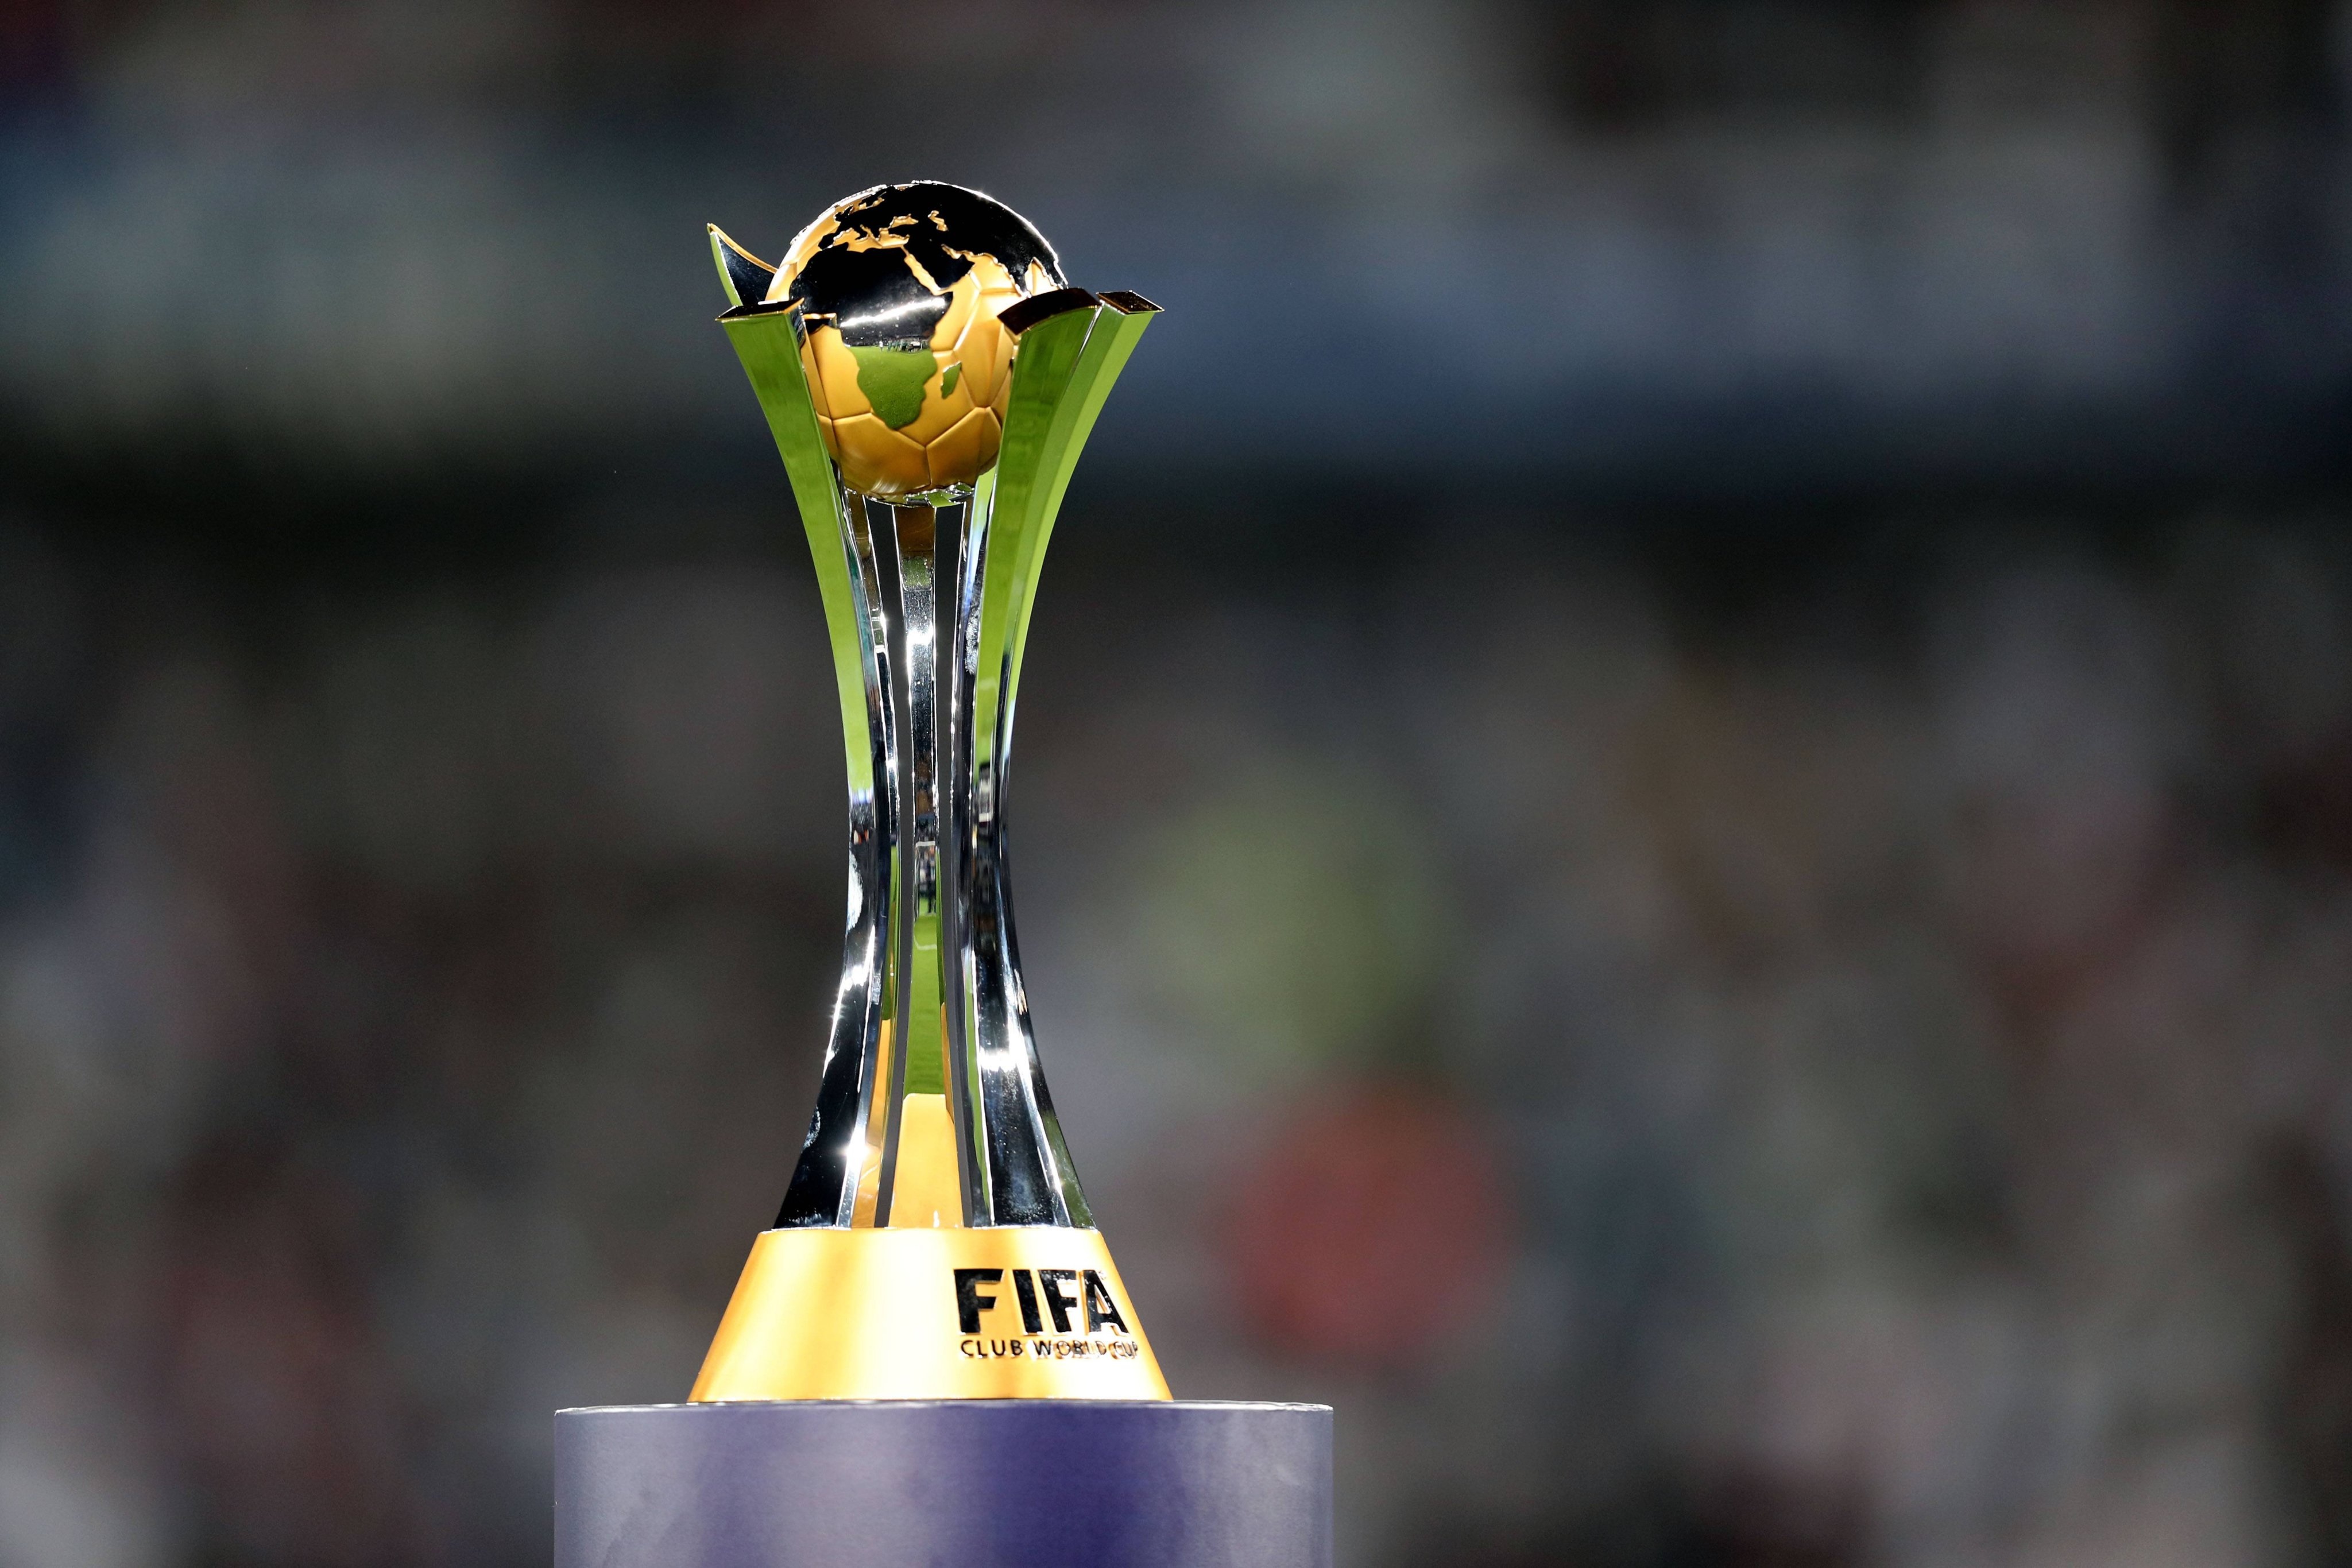 فيفا يكشف سر تصميم كأس مونديال الأندية